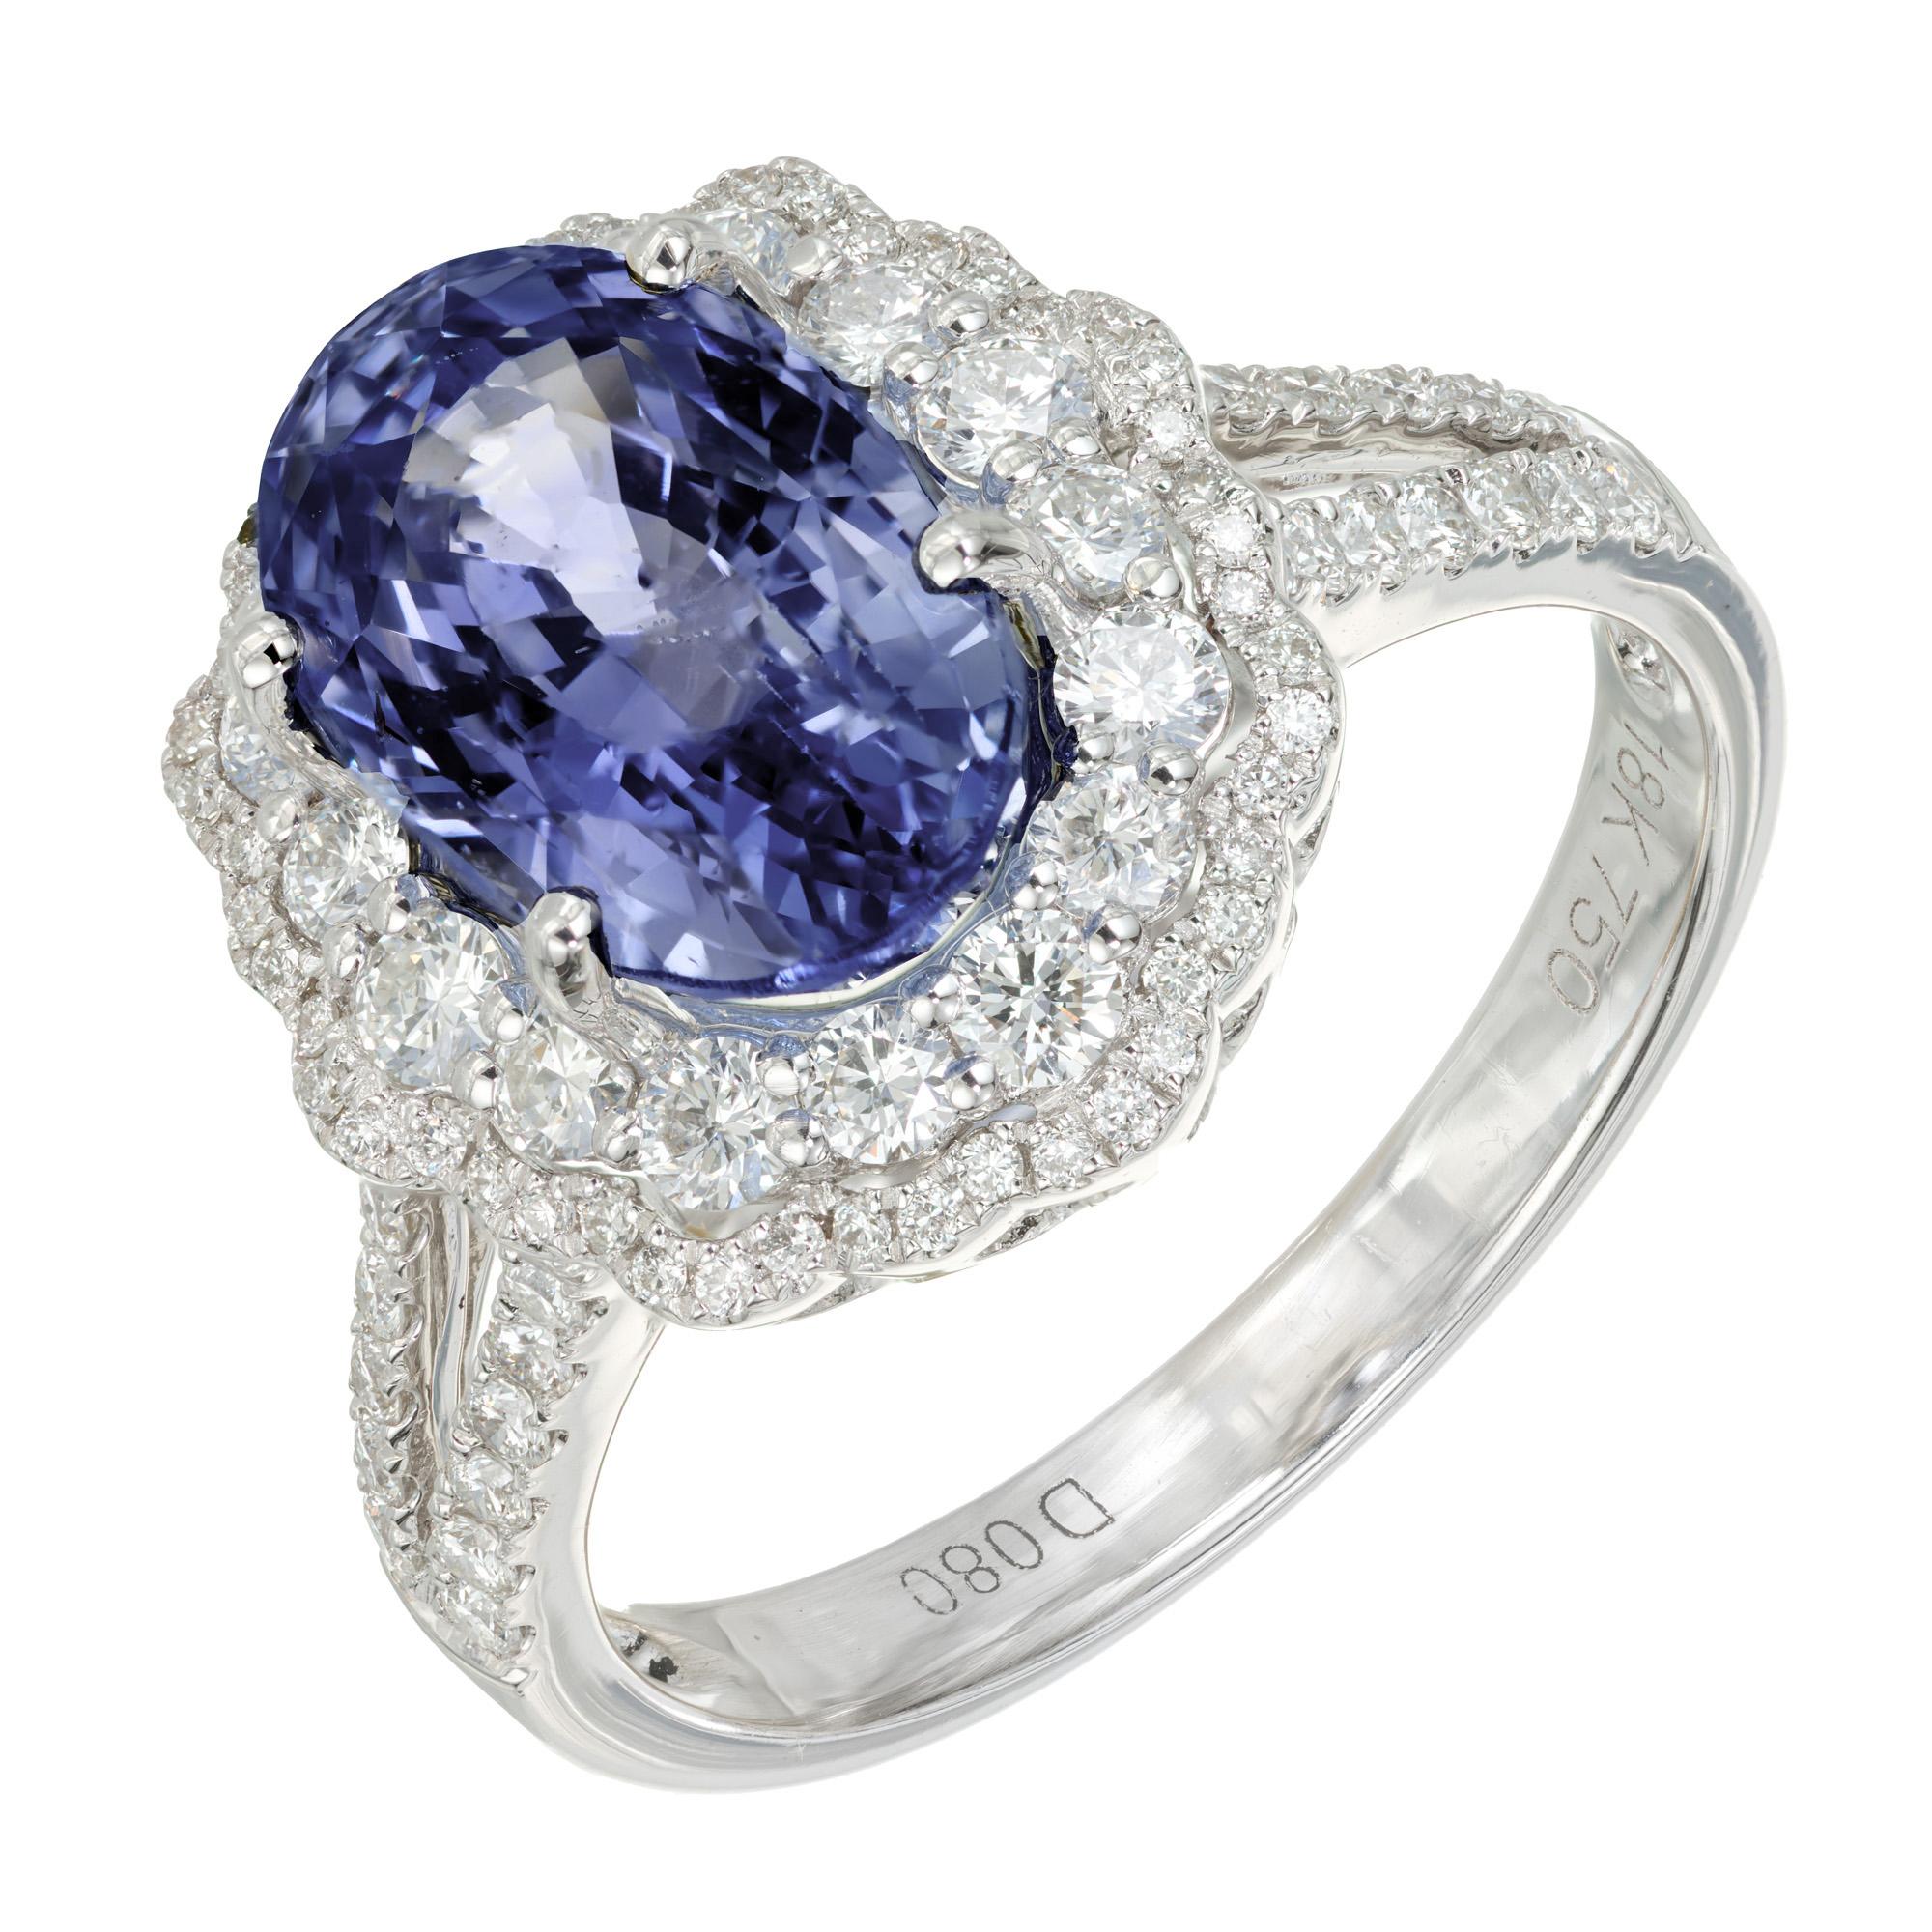 Bague de fiançailles en saphir bleu pervenche et diamant. Saphir ovale de 4,55 ct au centre, certifié GIA, non traité, avec double halo de diamants ronds de taille brillant. La monture à tige fendue en or blanc 18 carats est rehaussée de diamants